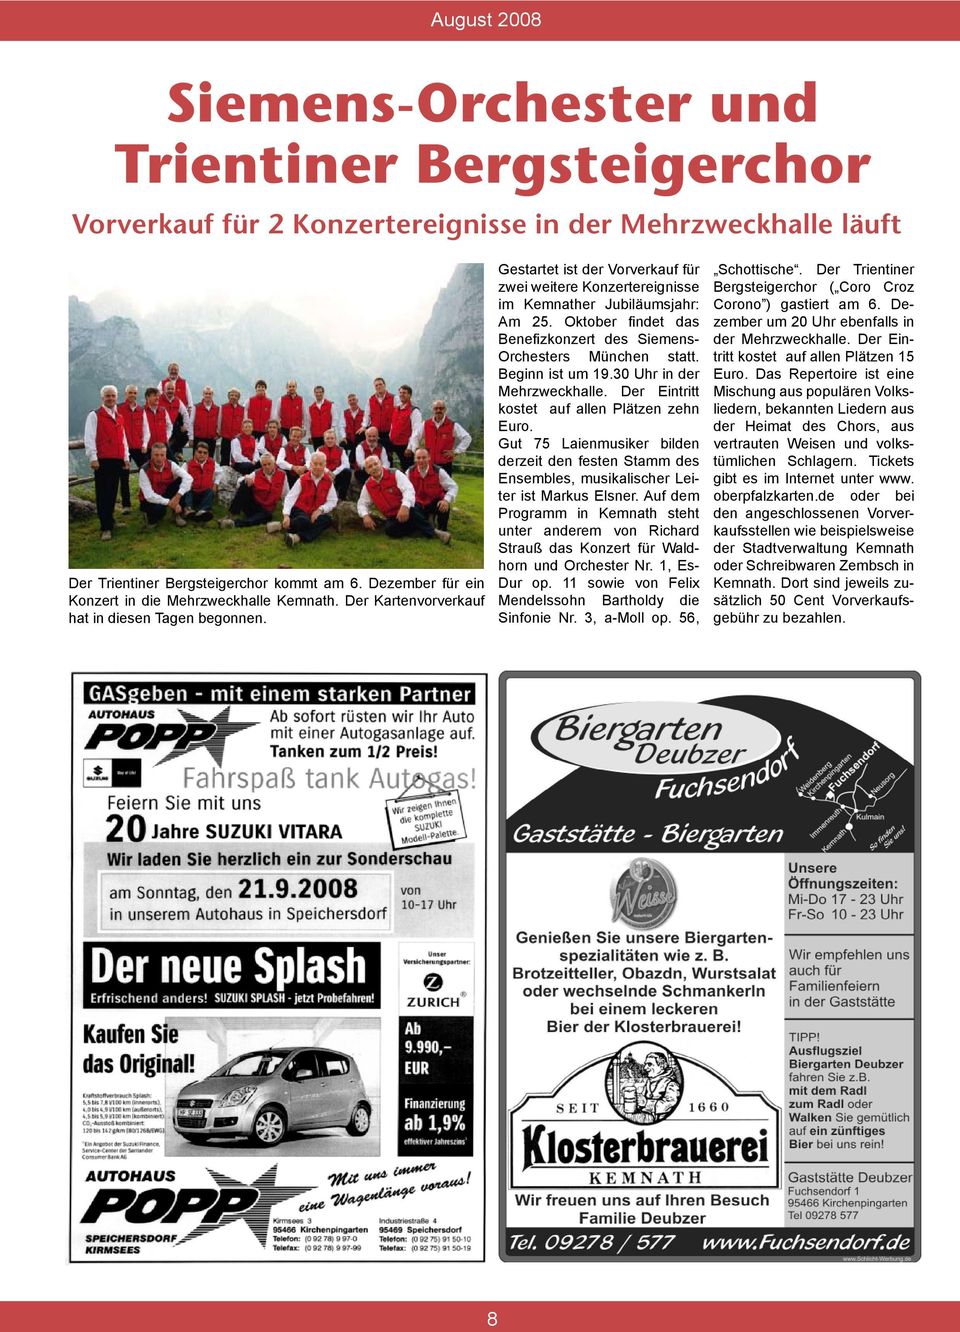 Gestartet ist der Vorverkauf für zwei weitere Konzertereignisse im Kemnather Jubiläumsjahr: Am 25. Oktober ndet das Bene zkonzert des Siemens- Orchesters München statt. Beginn ist um 19.